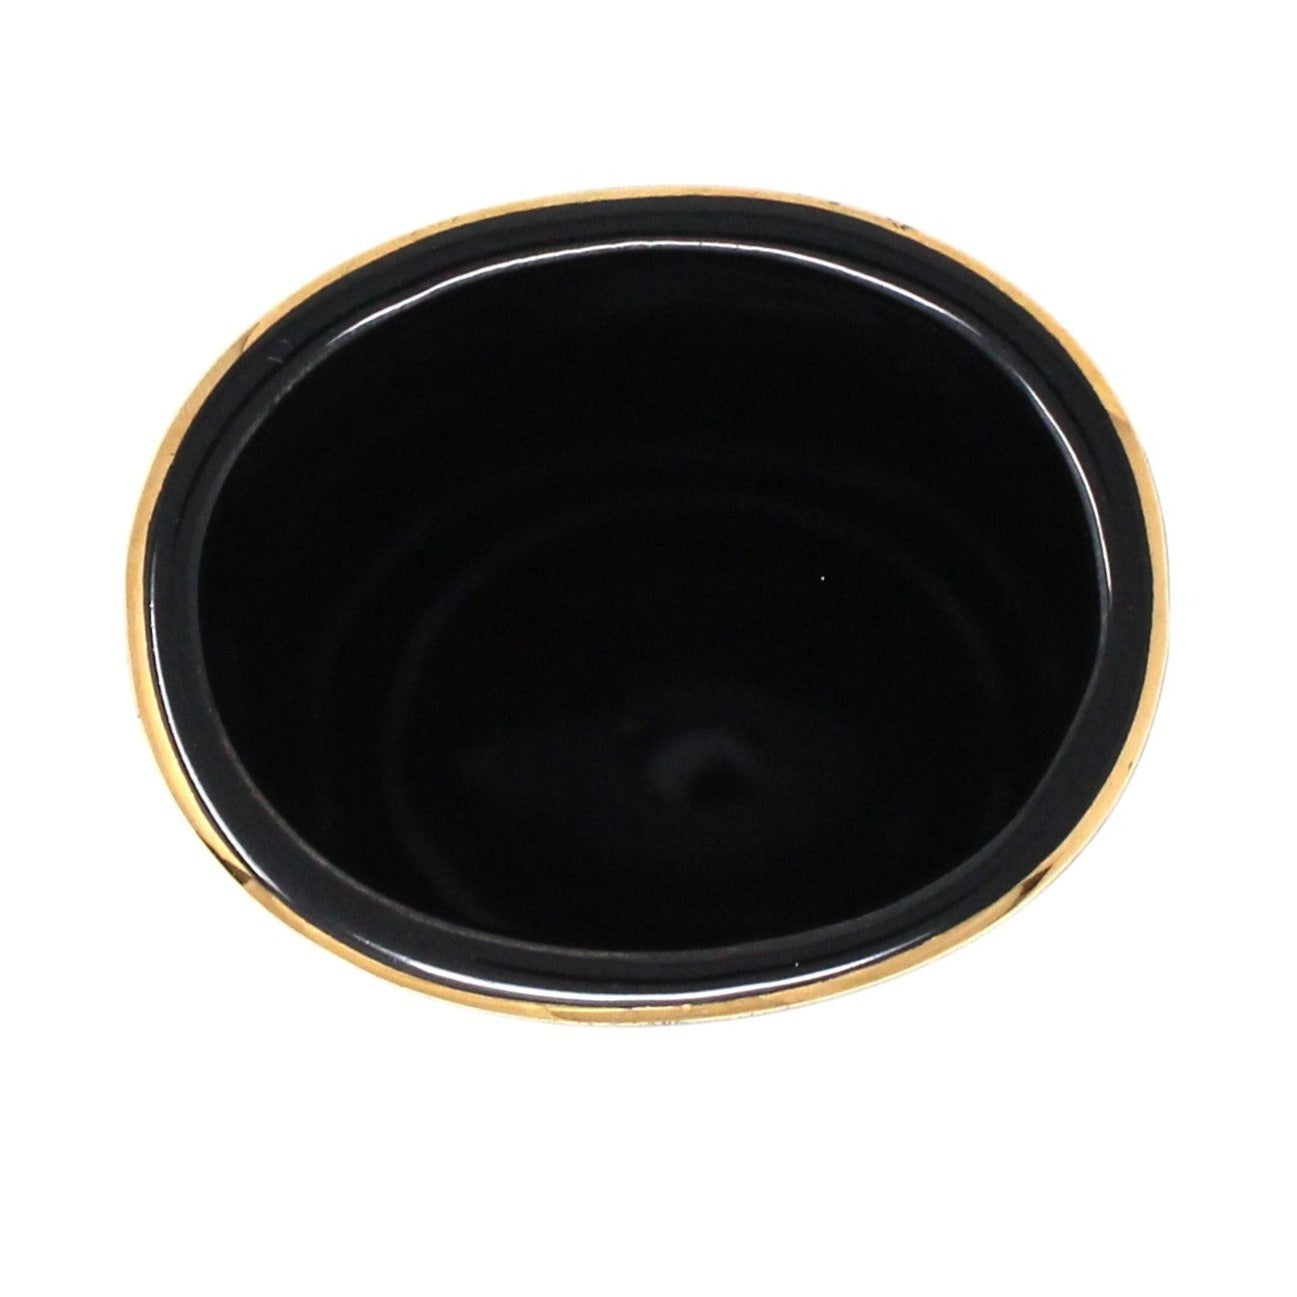 Vase, Otagiri, Black Vase with Golden Sea Shells, Japan Porcelain, Vintage